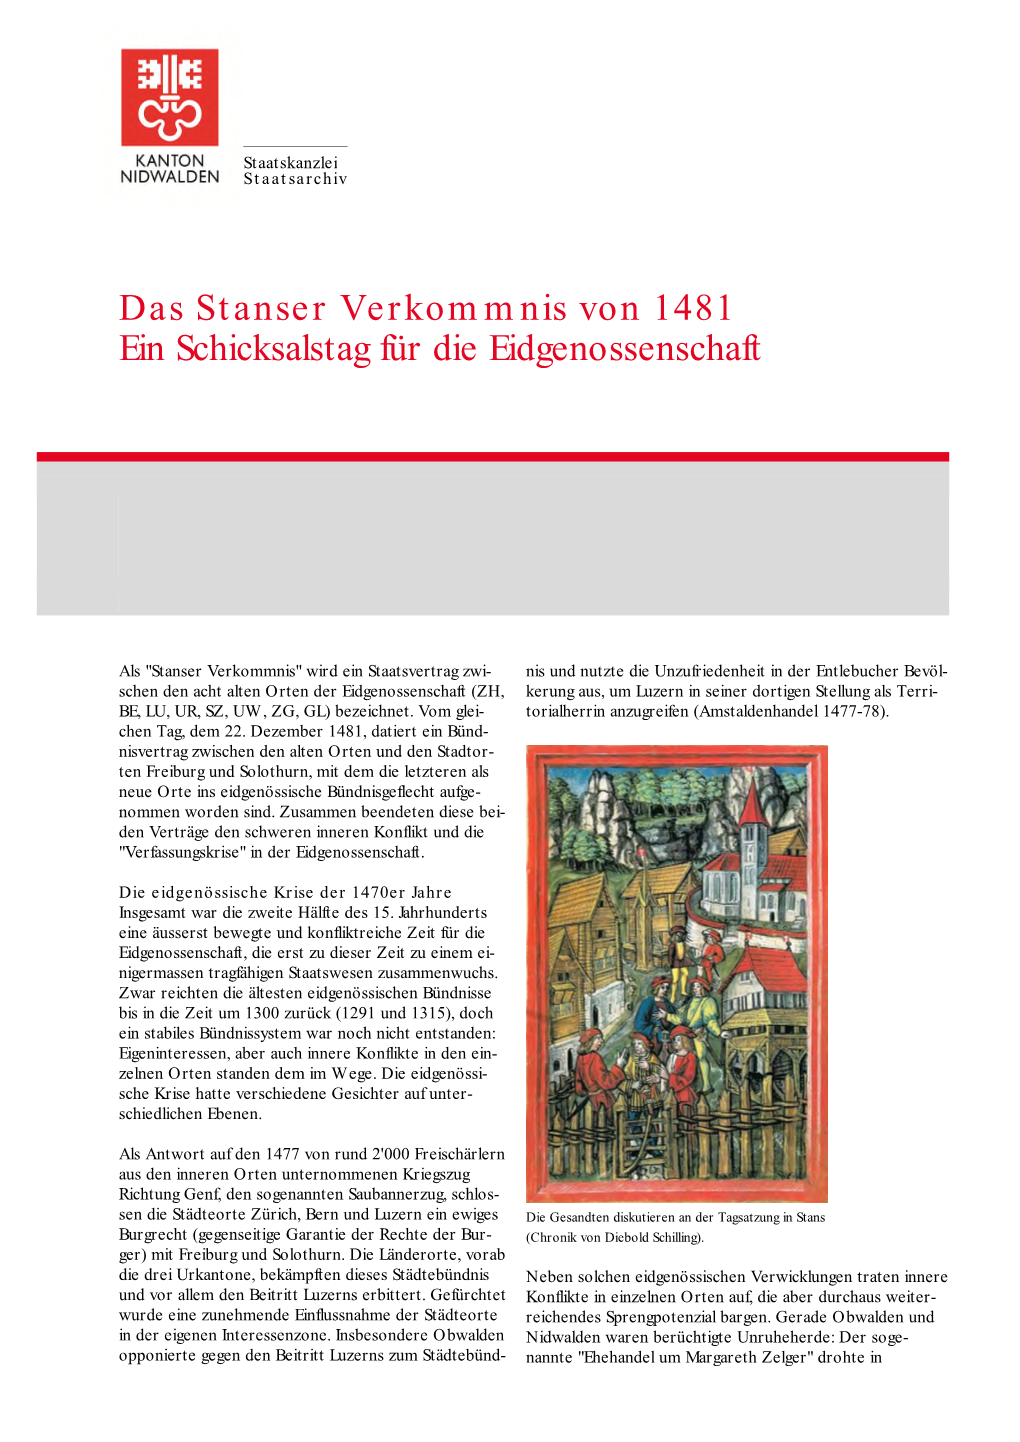 Das Stanser Verkommnis Von 1481 Ein Schicksalstag Für Die Eidgenossenschaft